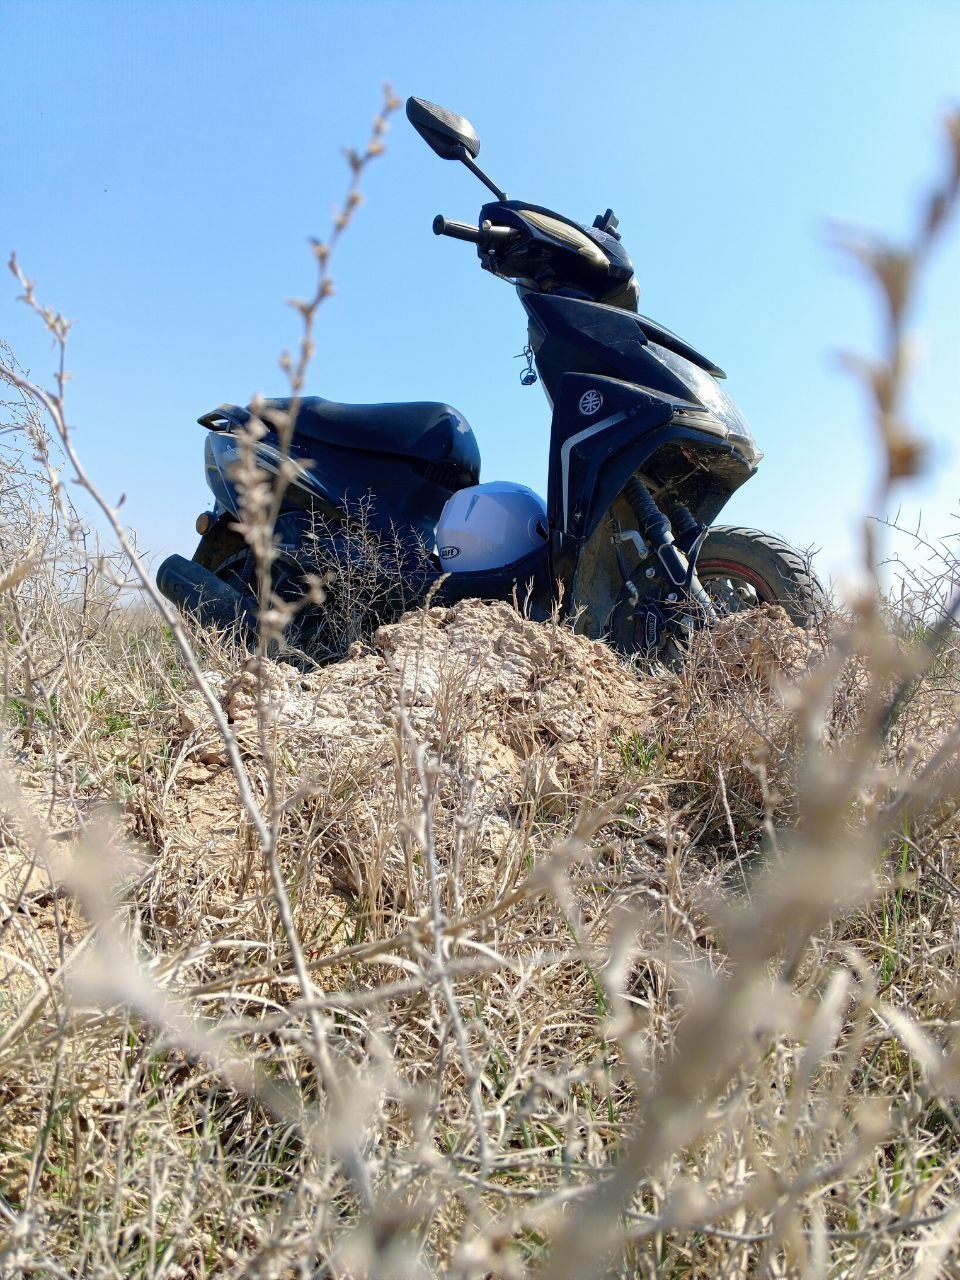 M8 Moped Turkestan